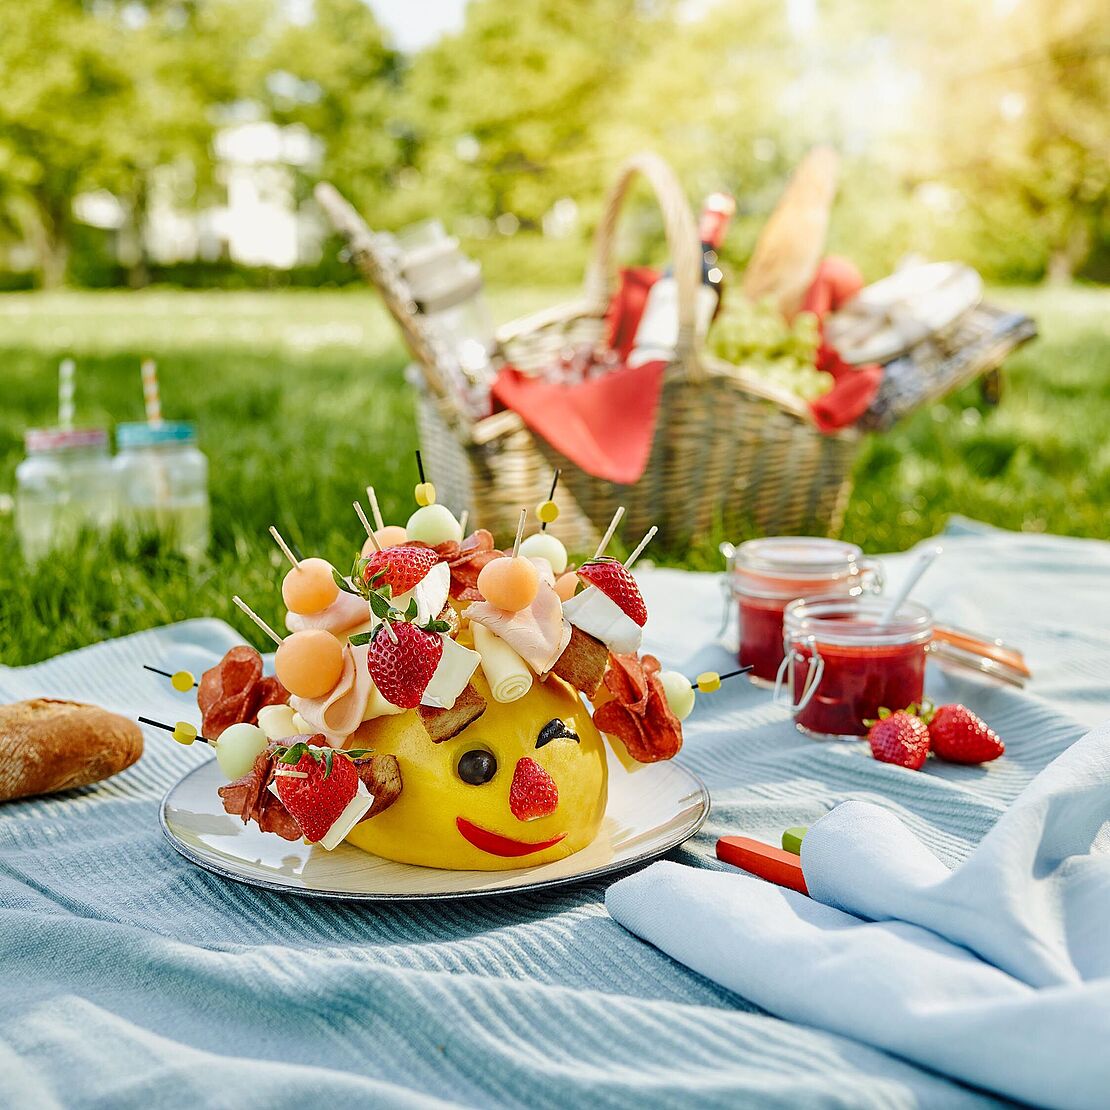 Käseigel Gérard hat auf seinen Spießen Géramont, Honigmelone und Putenbrust und sitzt auf einer Picknickdecke